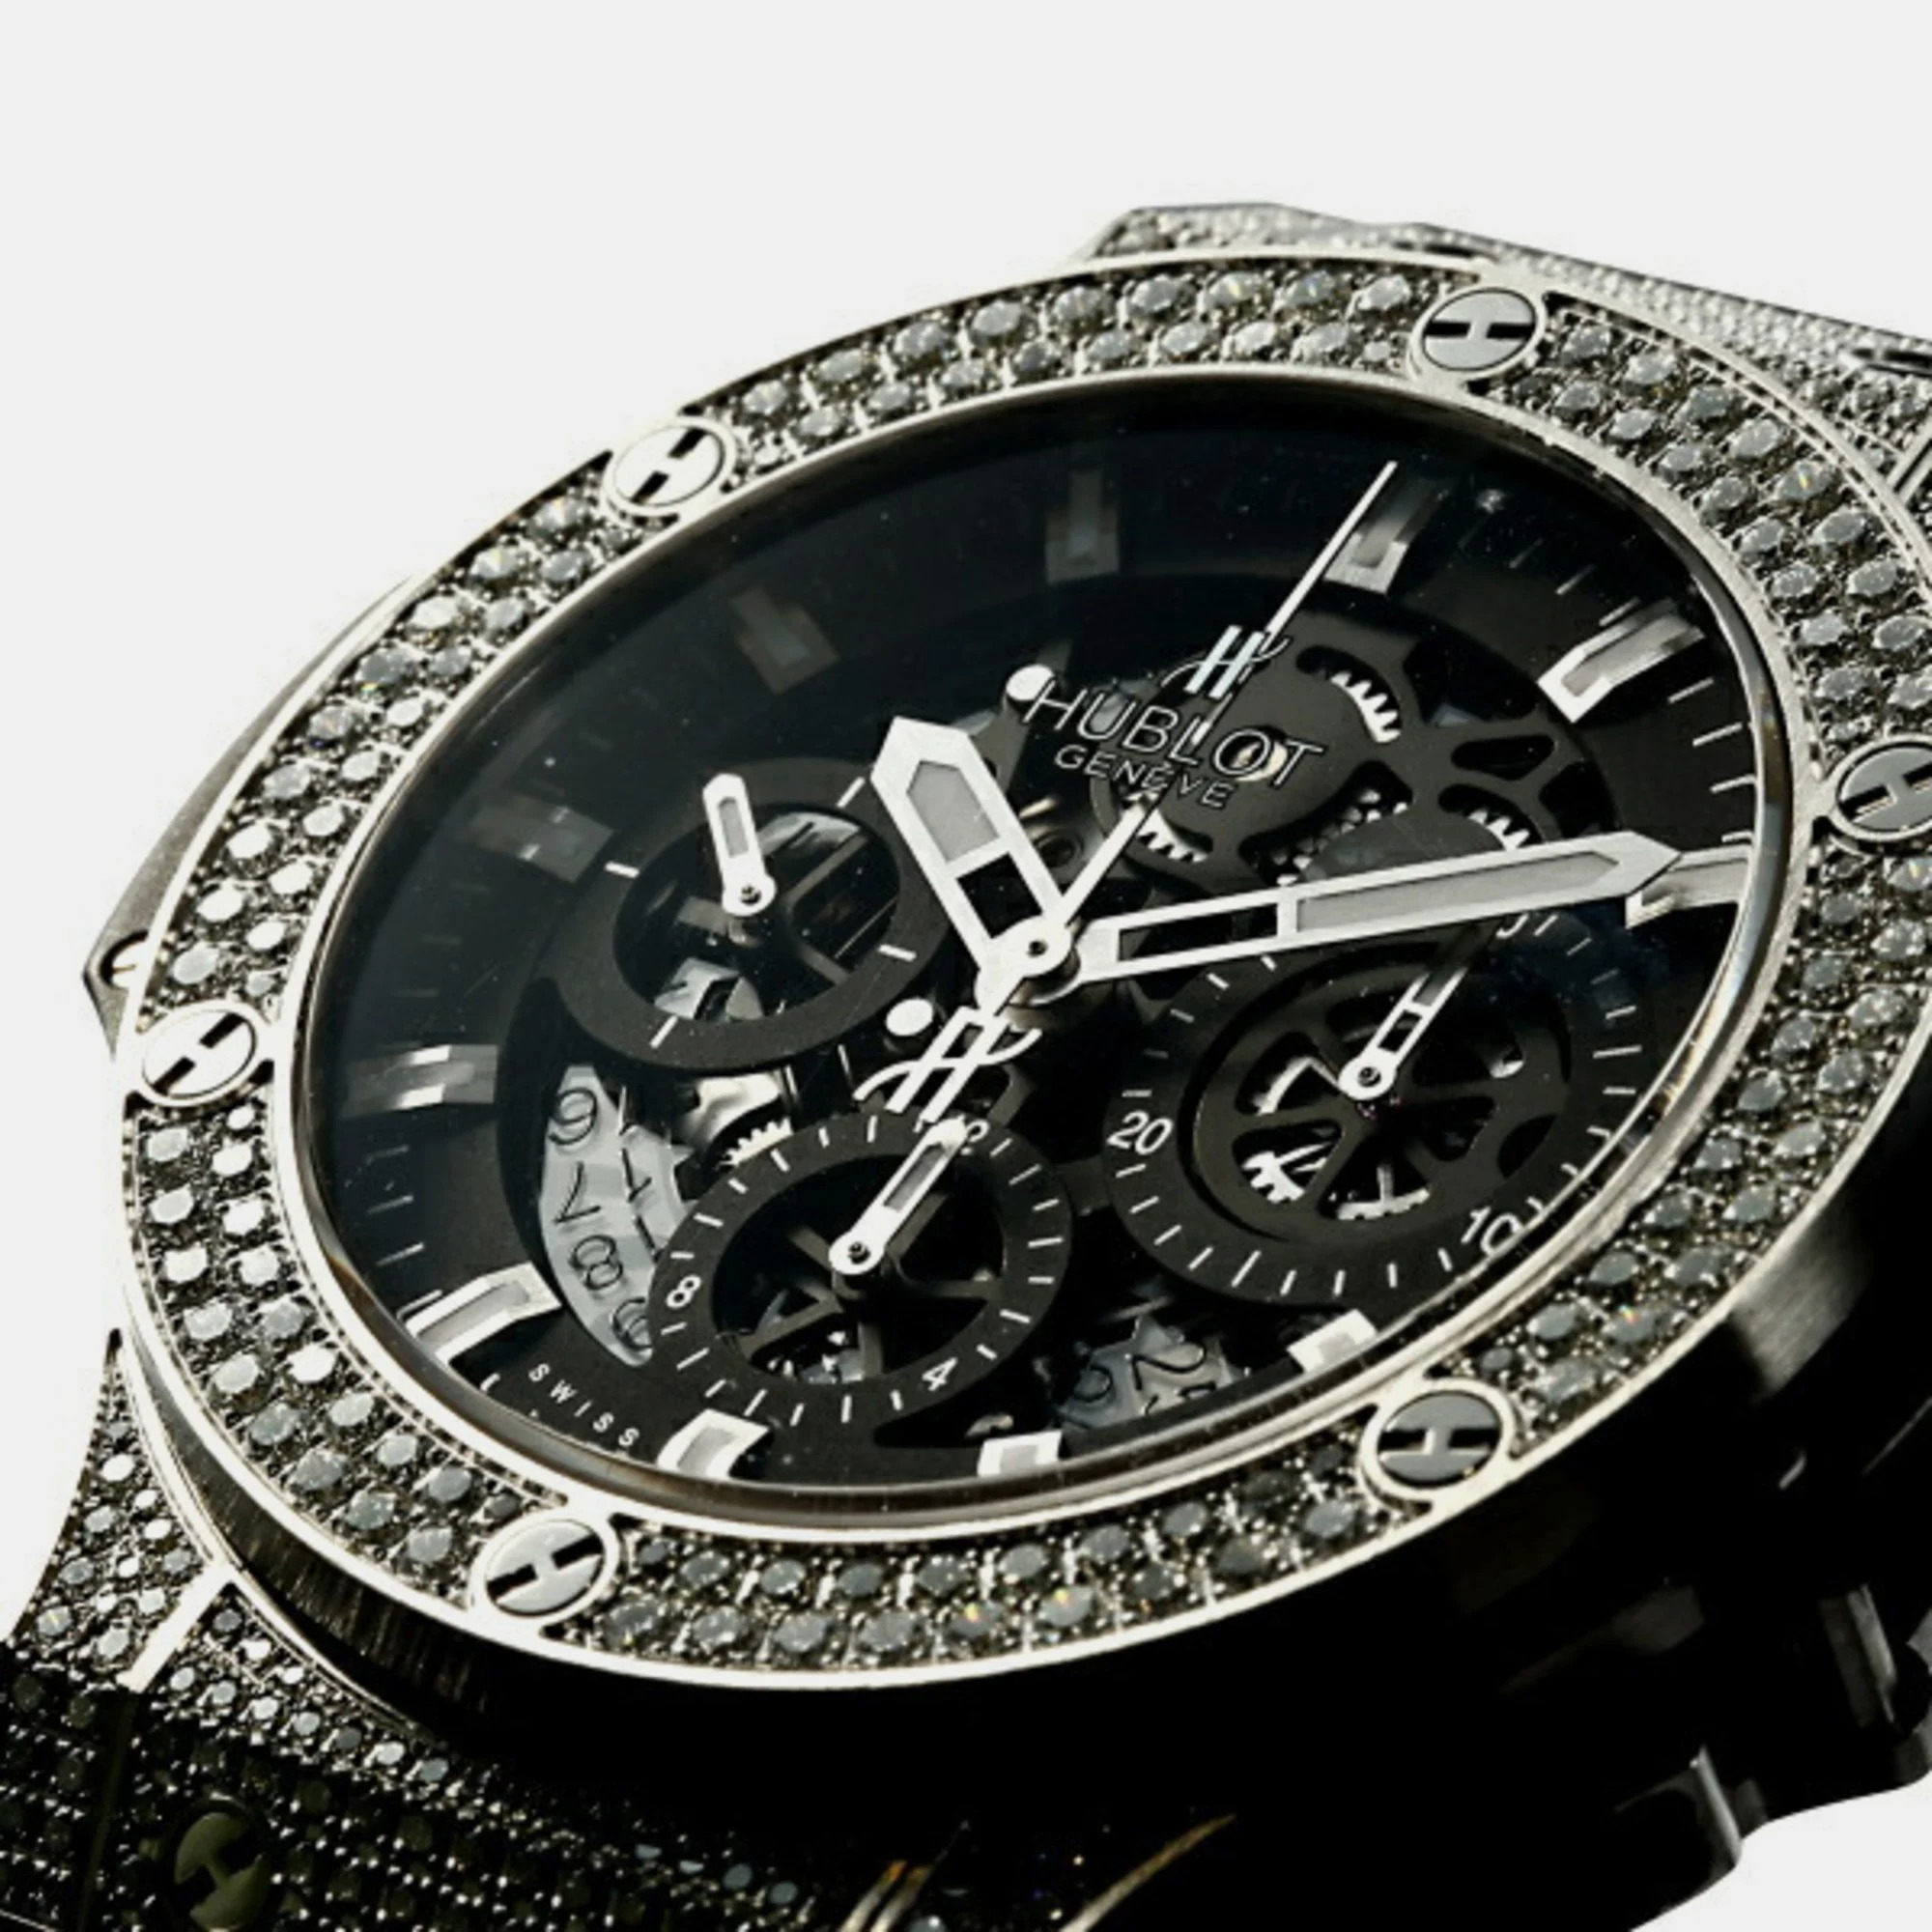 

Hublot Black Stainless Steel Big Bang Aero 311.SX.1170.GR.1704 Men's Wristwatch 44 mm